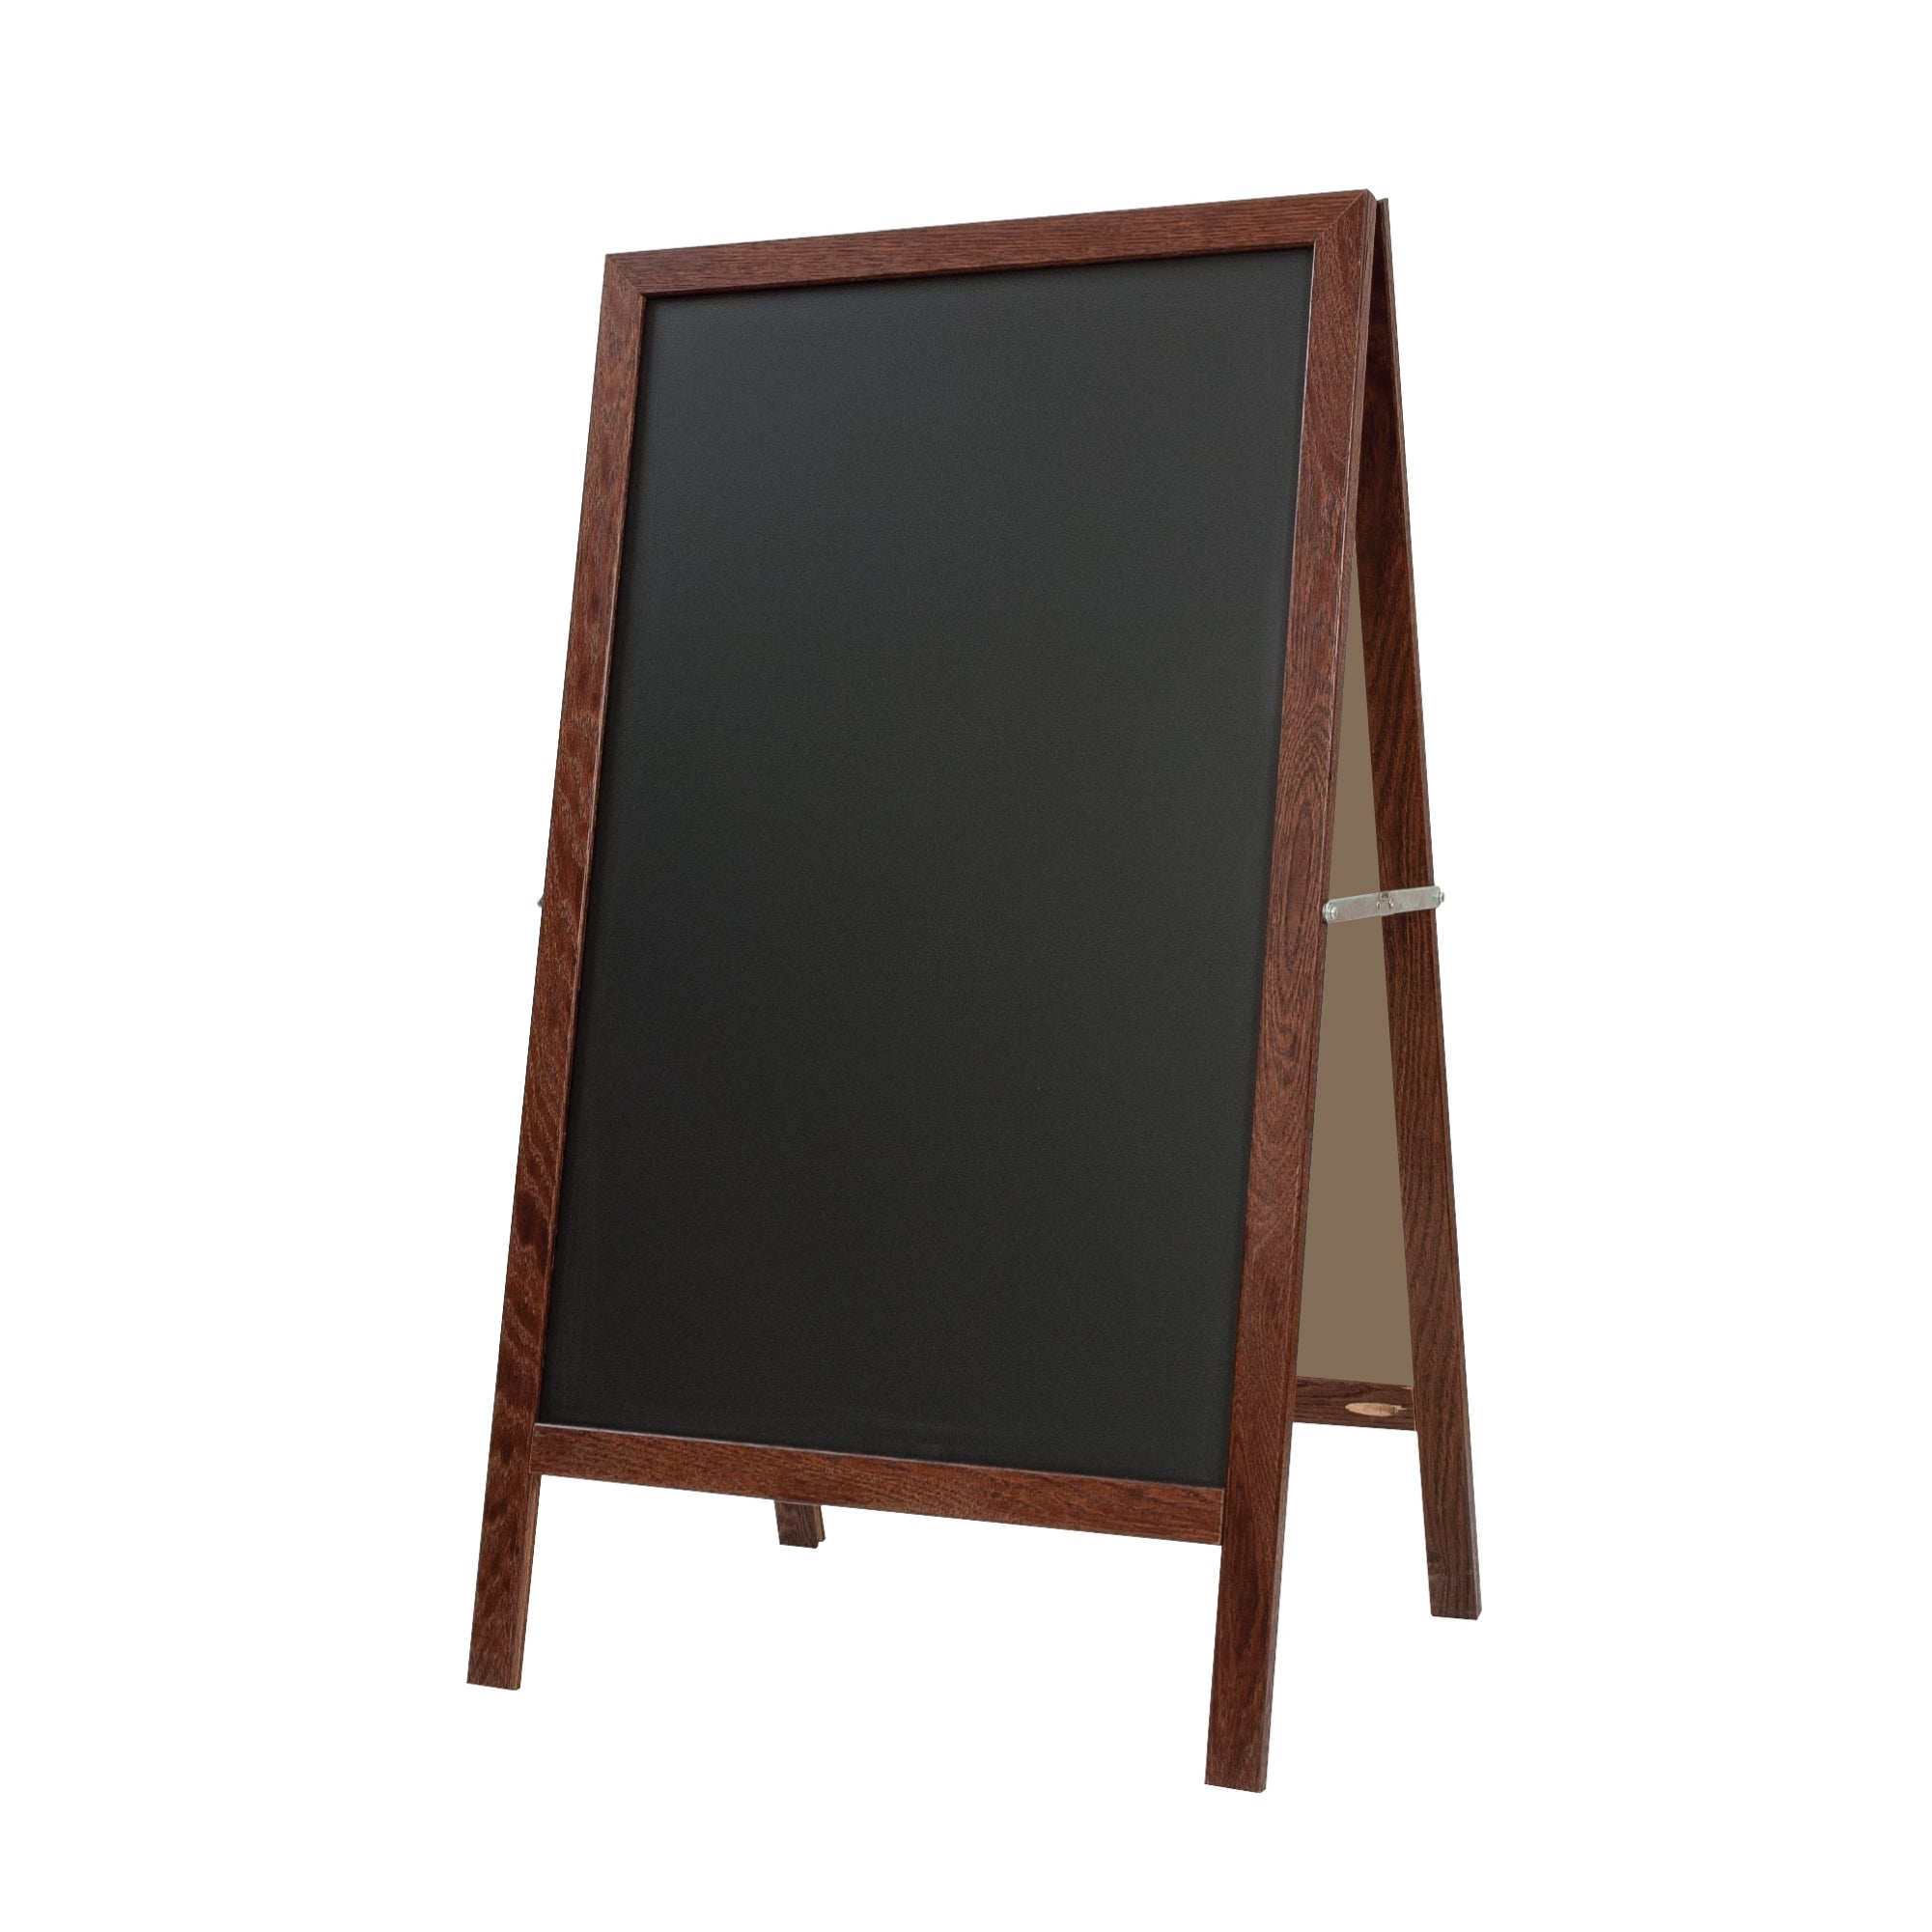 Pro-Rite Chalkboard with Solid Oak Frame - Marsh PR400-7560-6501